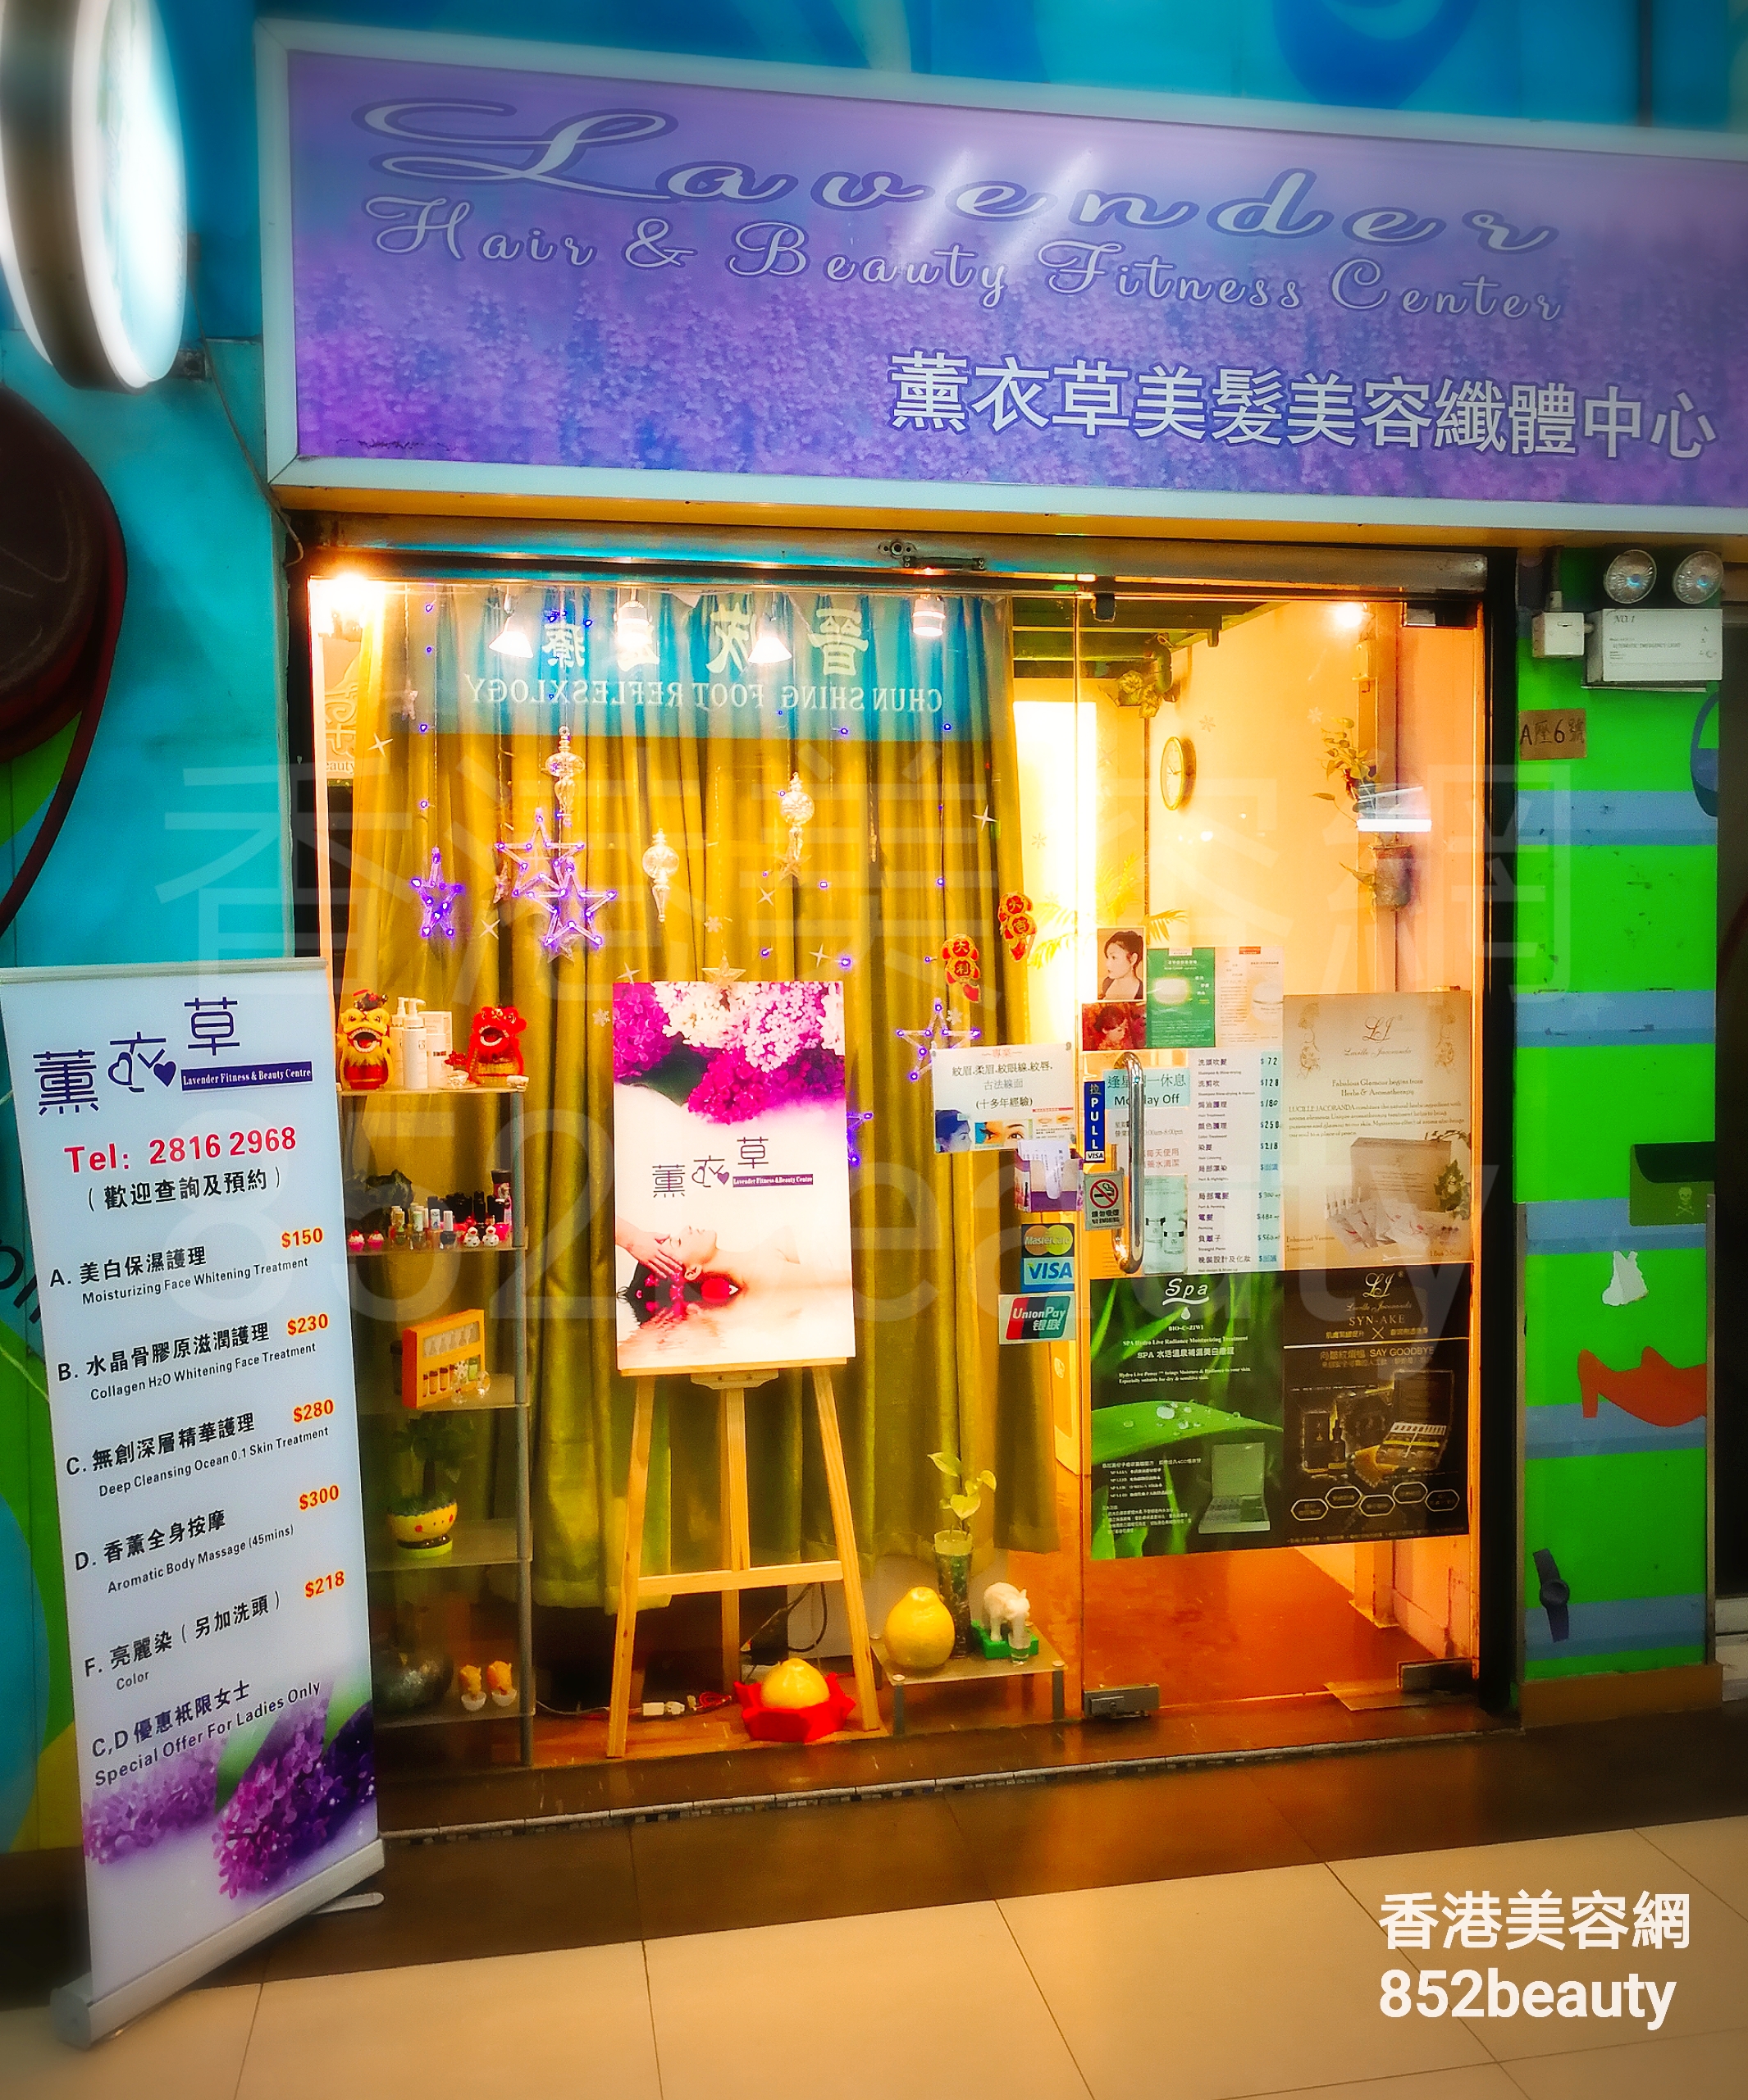 香港美容網 Hong Kong Beauty Salon 美容院 / 美容師: 薰衣草纖體及美容中心 Lavender Fitness & Beauty Centre